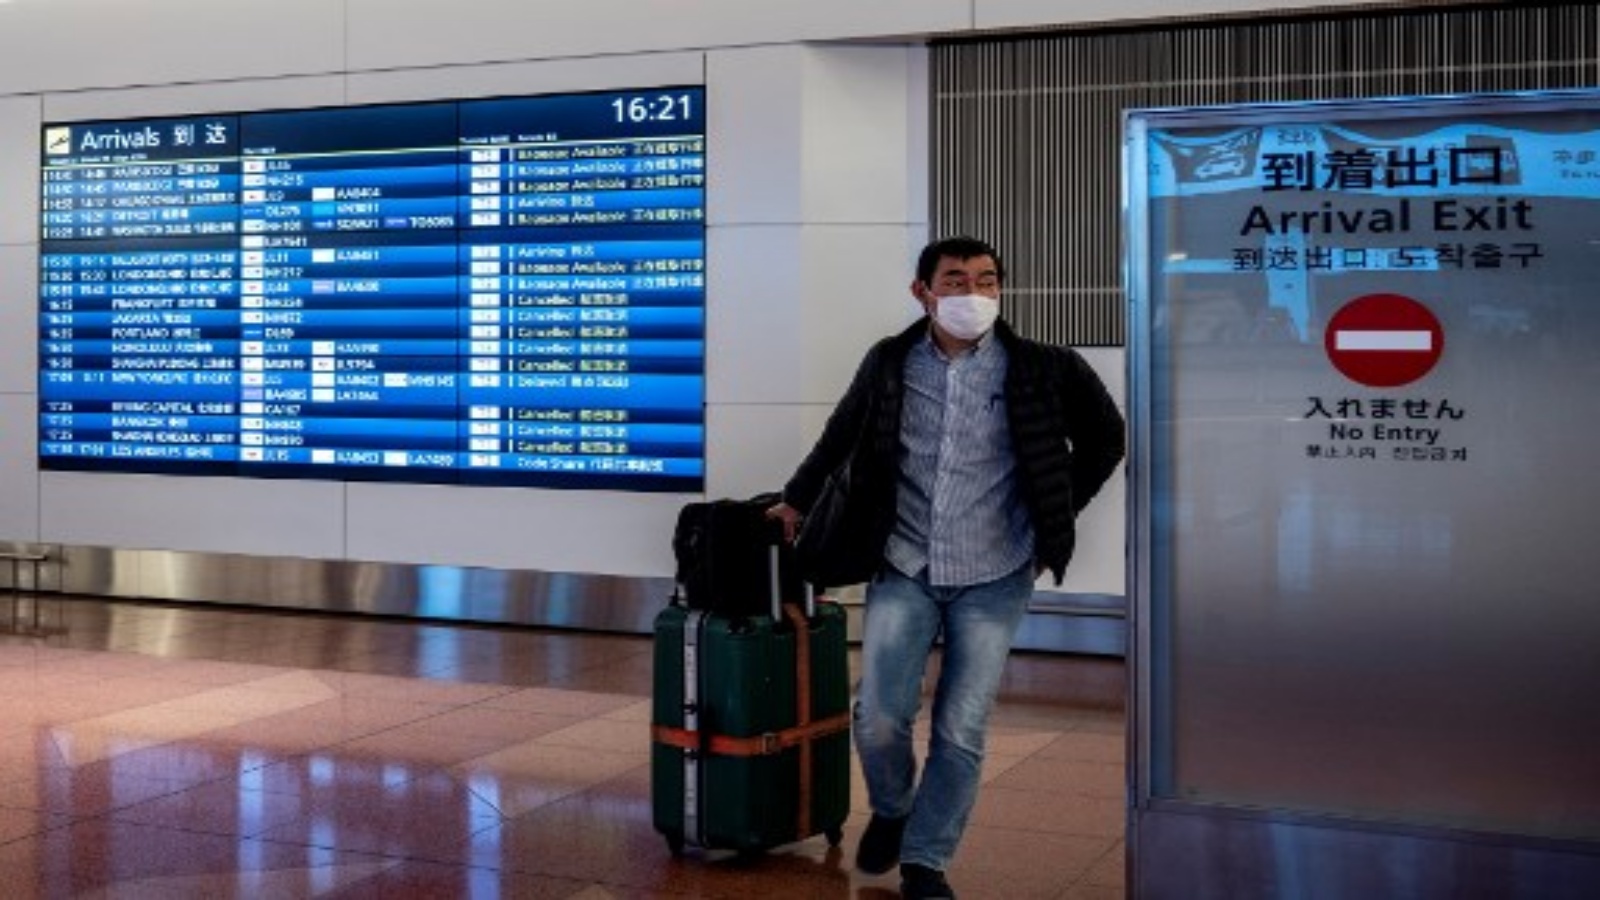 مسافر يغادر منطقة الوصول في مطار هانيدا بطوكيو في 27 ديسمبر 2020 ، بعد أن أعلنت الحكومة المزيد من القيود على السفر بسبب ارتفاع حالات الإصابة بفيروس كورونا المستجد في جميع أنحاء البلاد